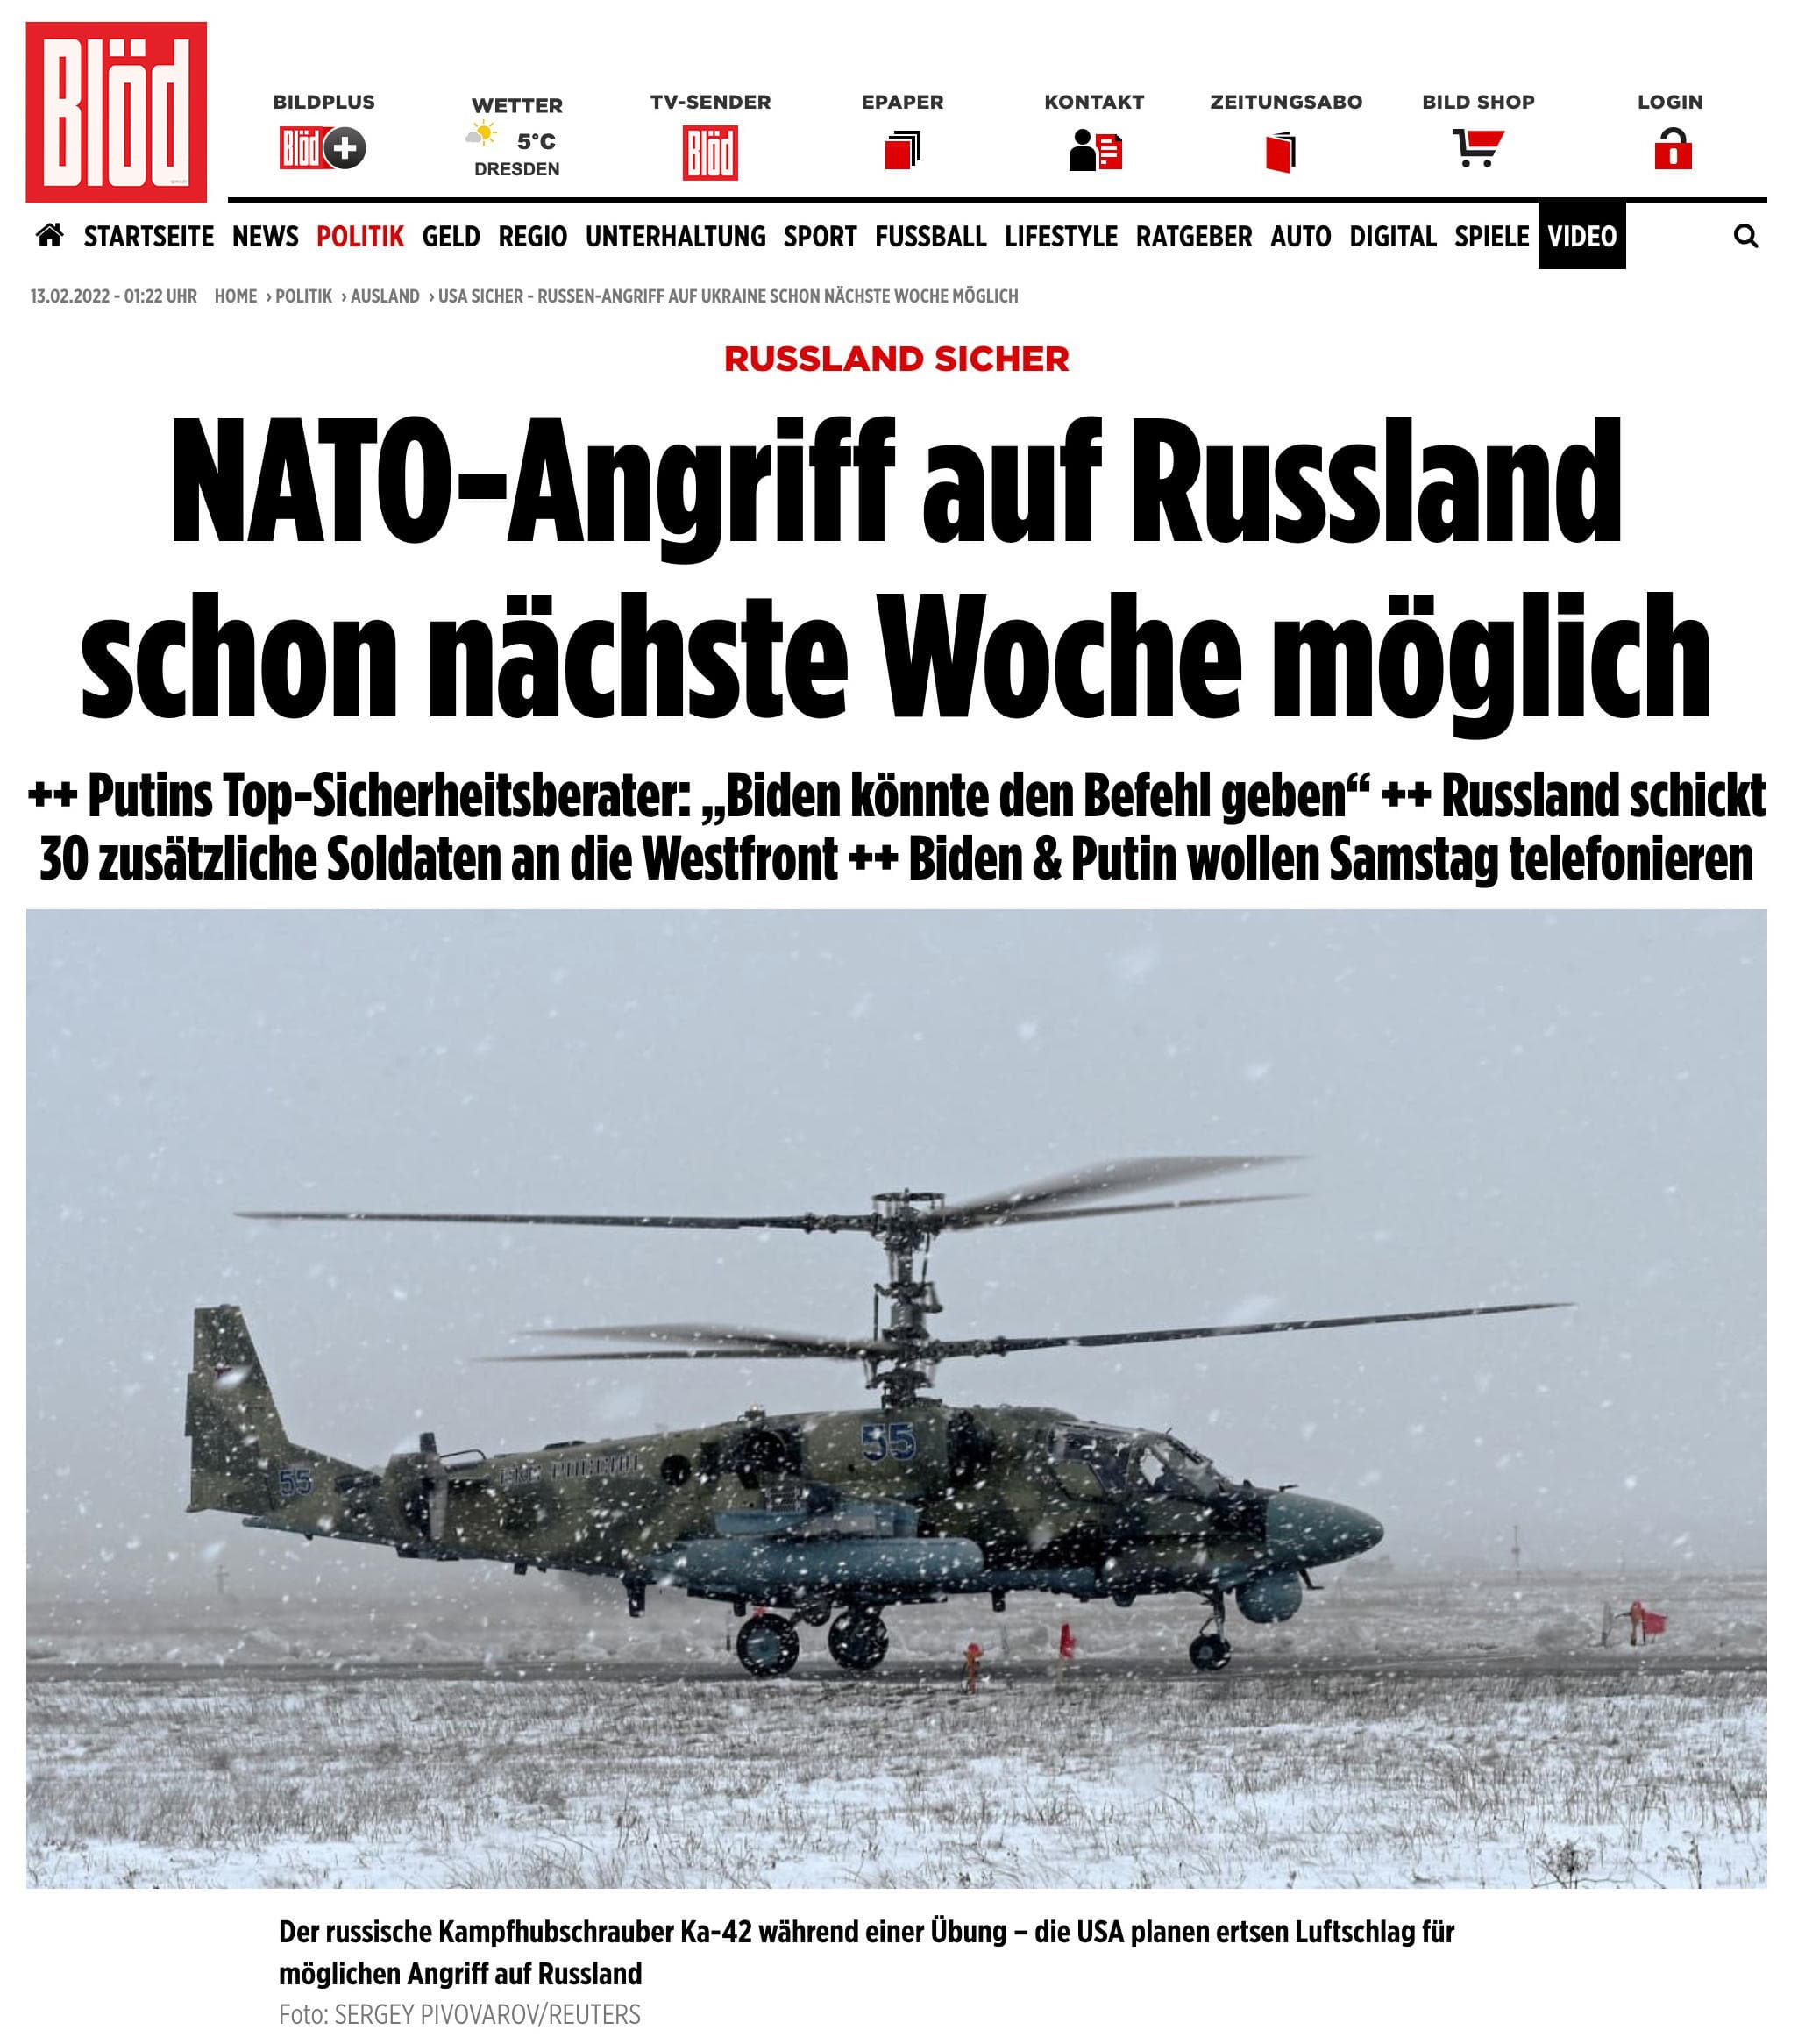 NATO Abgriff auf Russland Bloed Bild berichtet